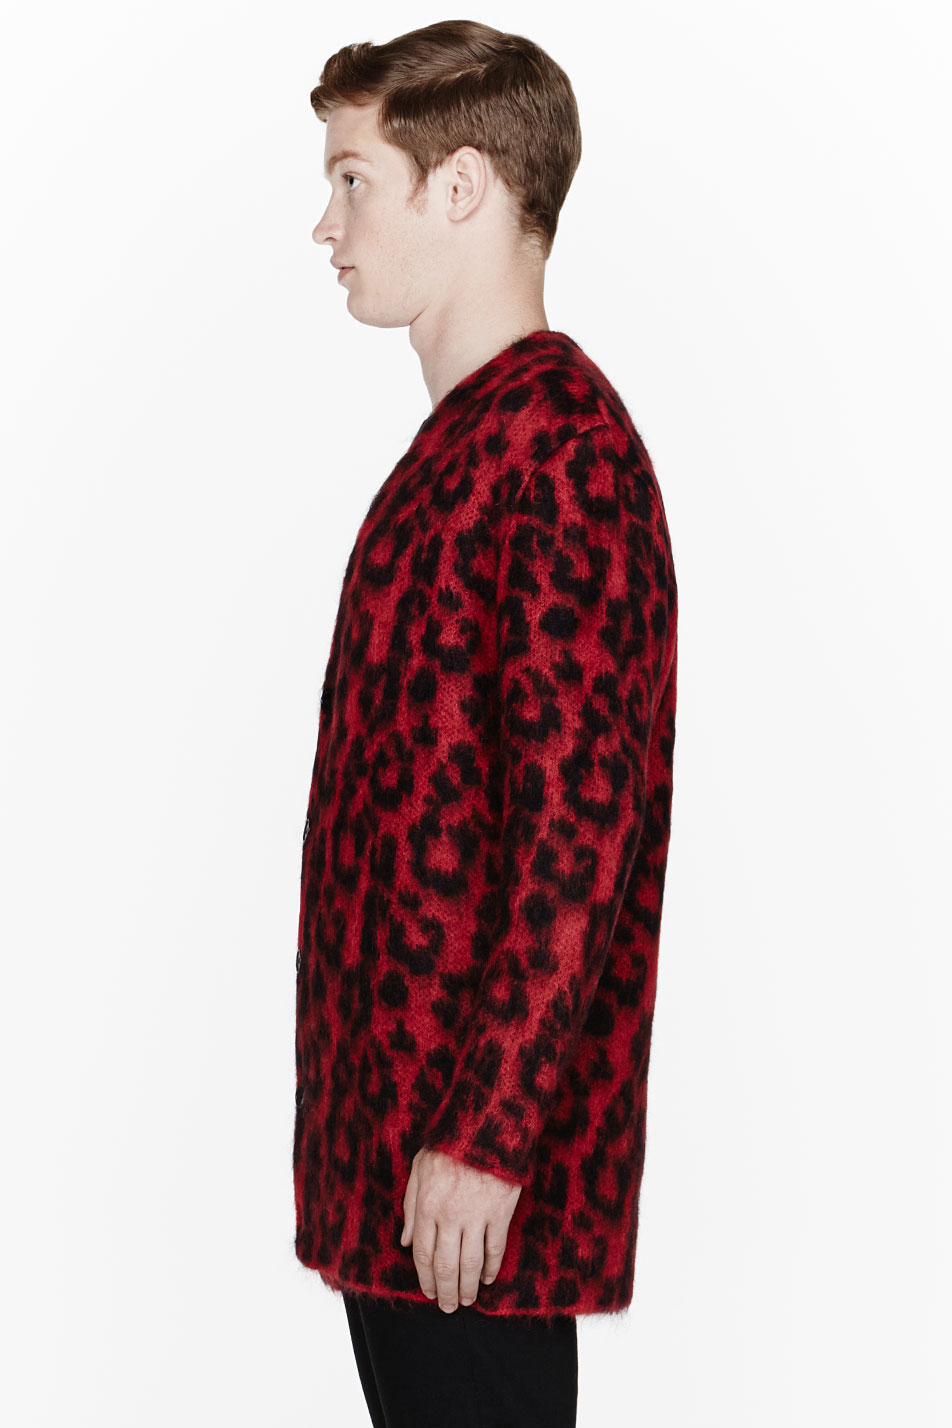 Saint Laurent Red Leopard Print Mohair Cardigan for Men - Lyst